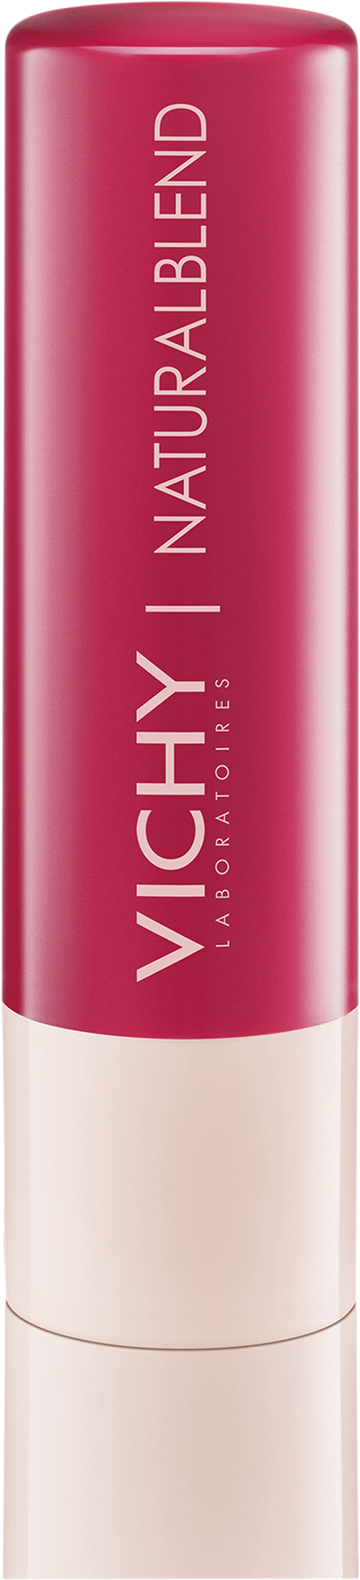 Vichy NaturalBlend lip balm - pink